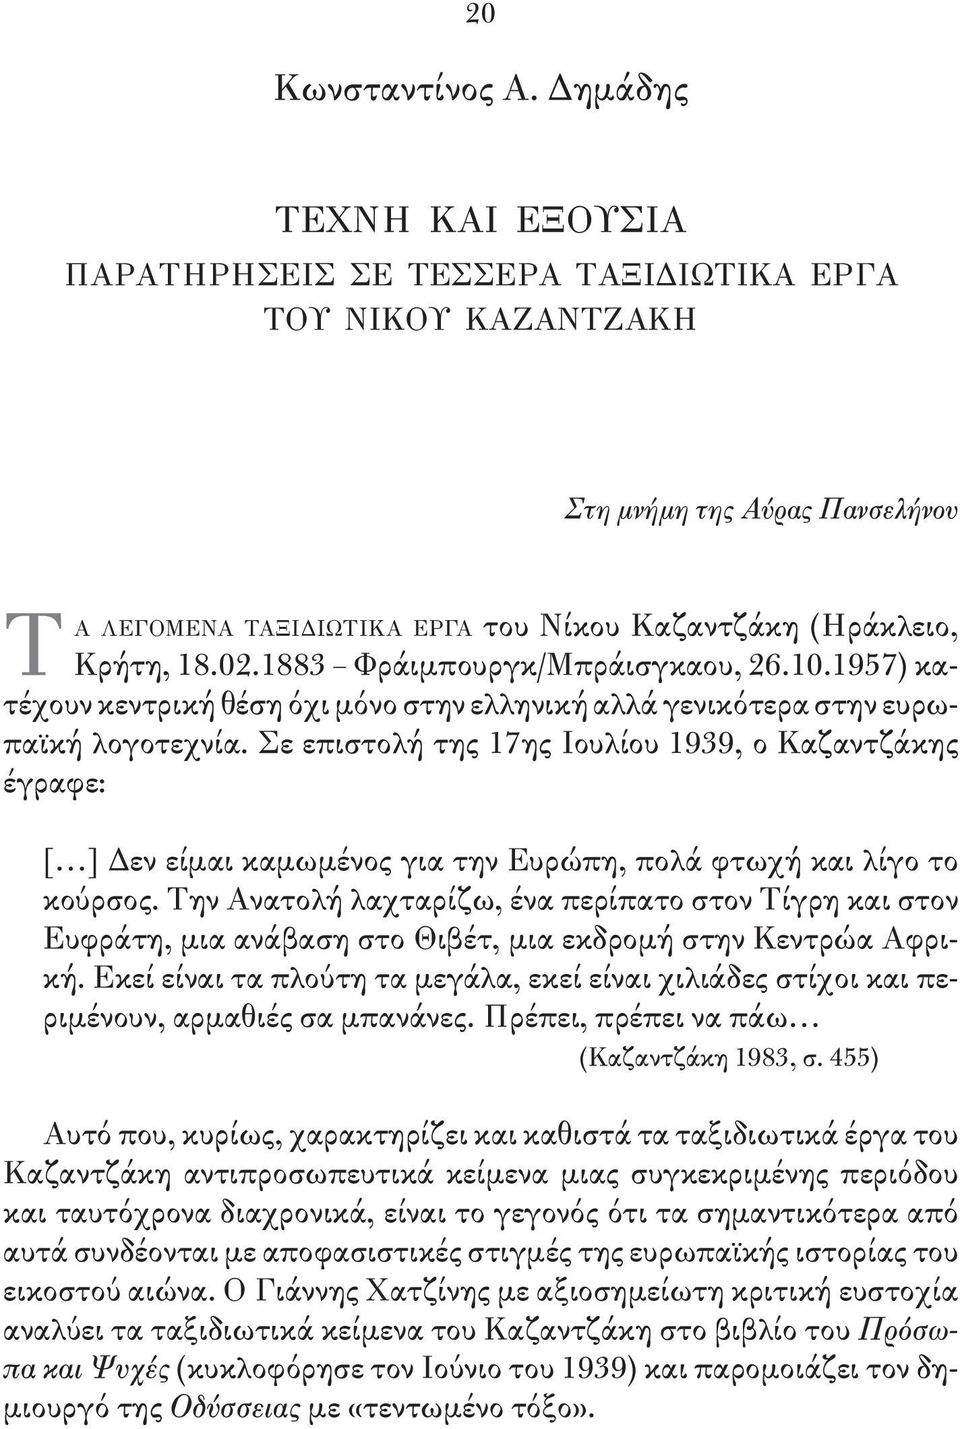 1883 Φράιμπουργκ/Μπράισγκαου, 26.10.1957) κατέ χουν κεντρική θέση όχι μόνο στην ελληνική αλλά γενικότερα στην ευ ρωπαϊκή λογοτεχνία.